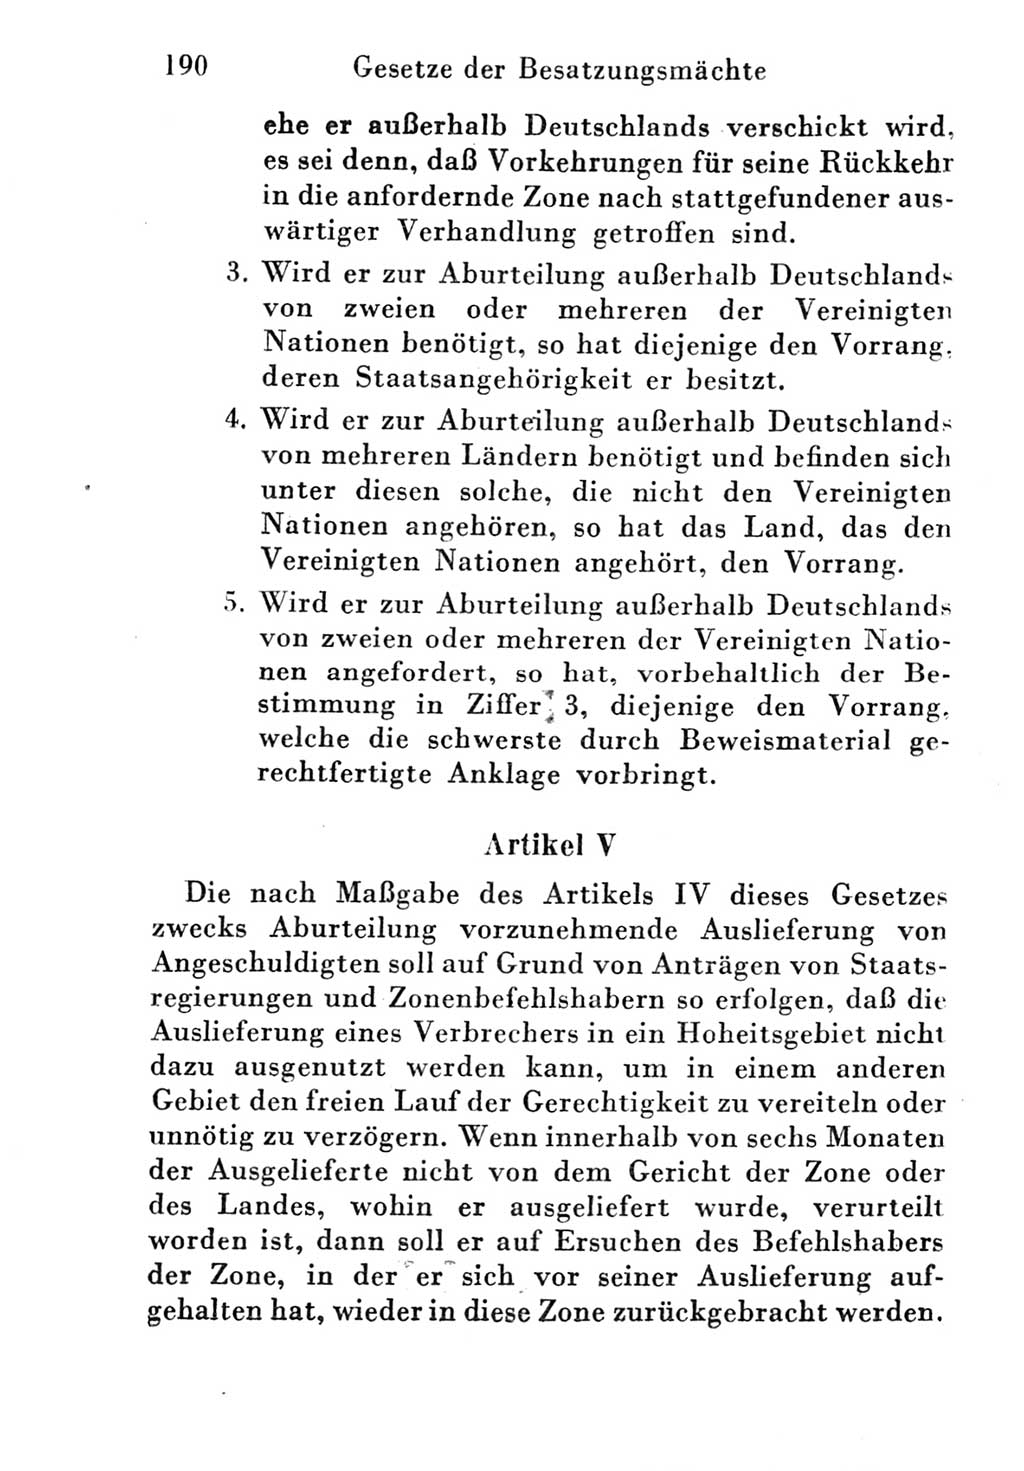 Strafgesetzbuch (StGB) und andere Strafgesetze [Deutsche Demokratische Republik (DDR)] 1951, Seite 190 (StGB Strafges. DDR 1951, S. 190)